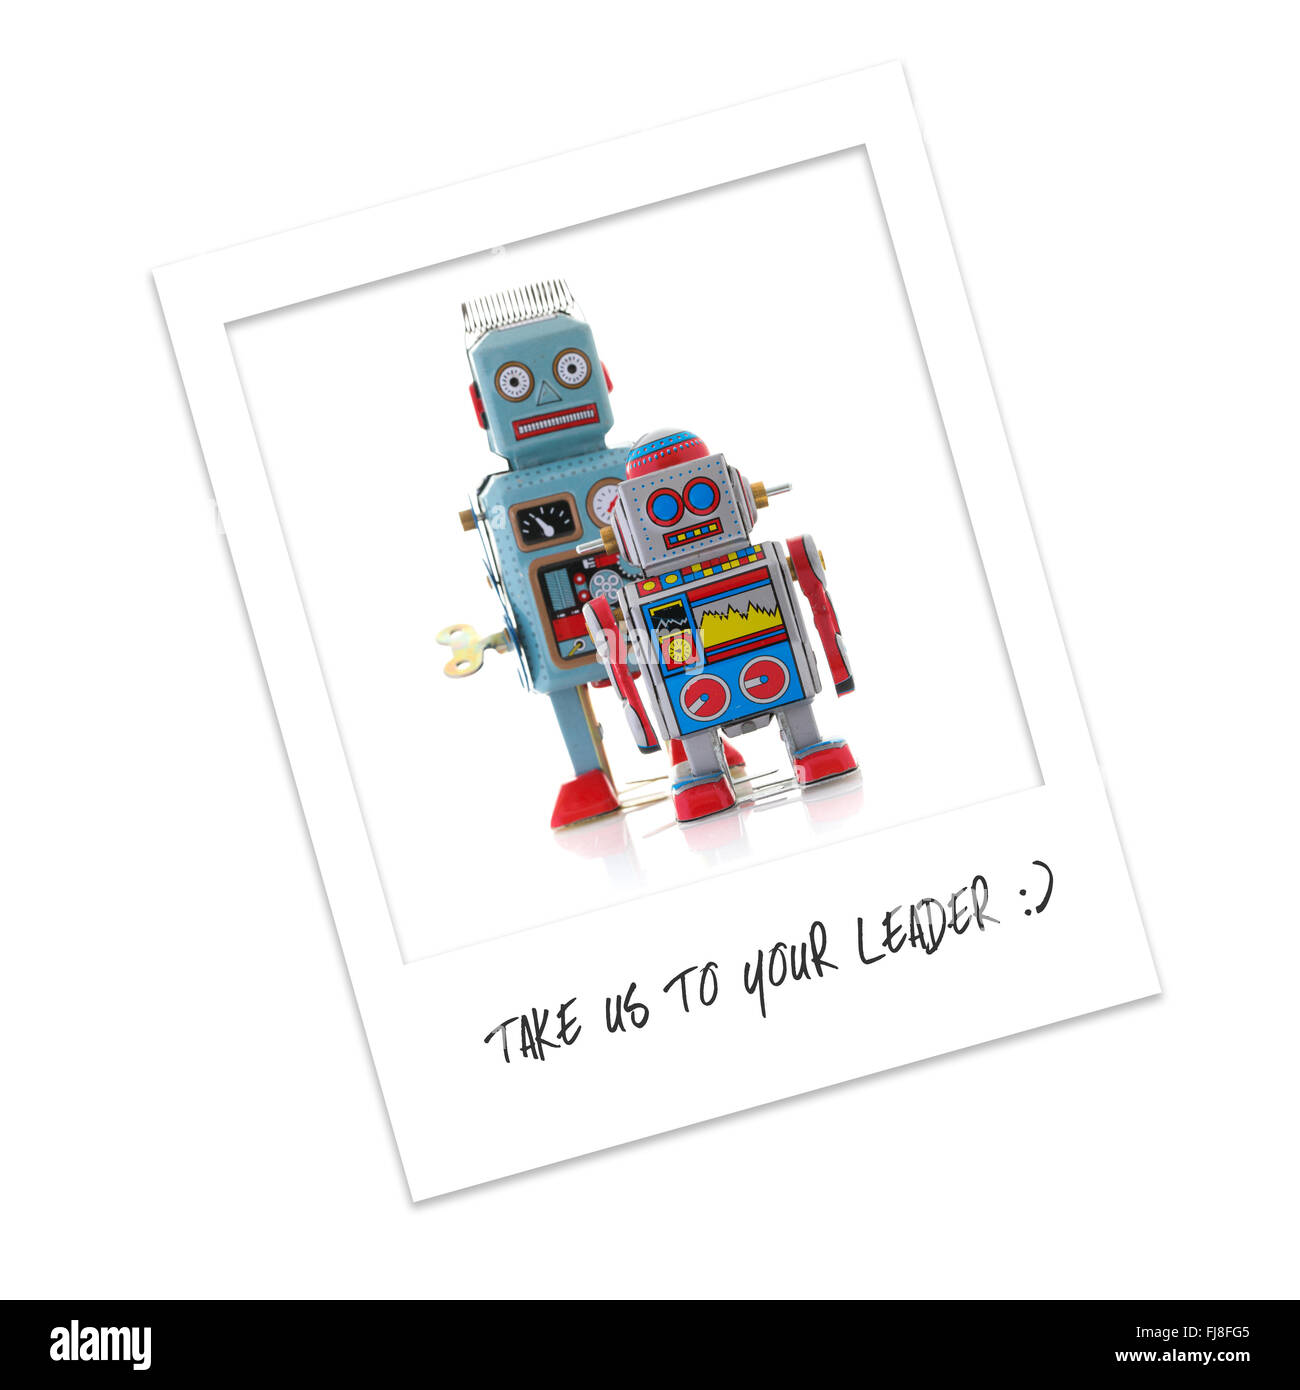 Polaroid Photo of Robots - Take Us To Your Leader Stock Photo